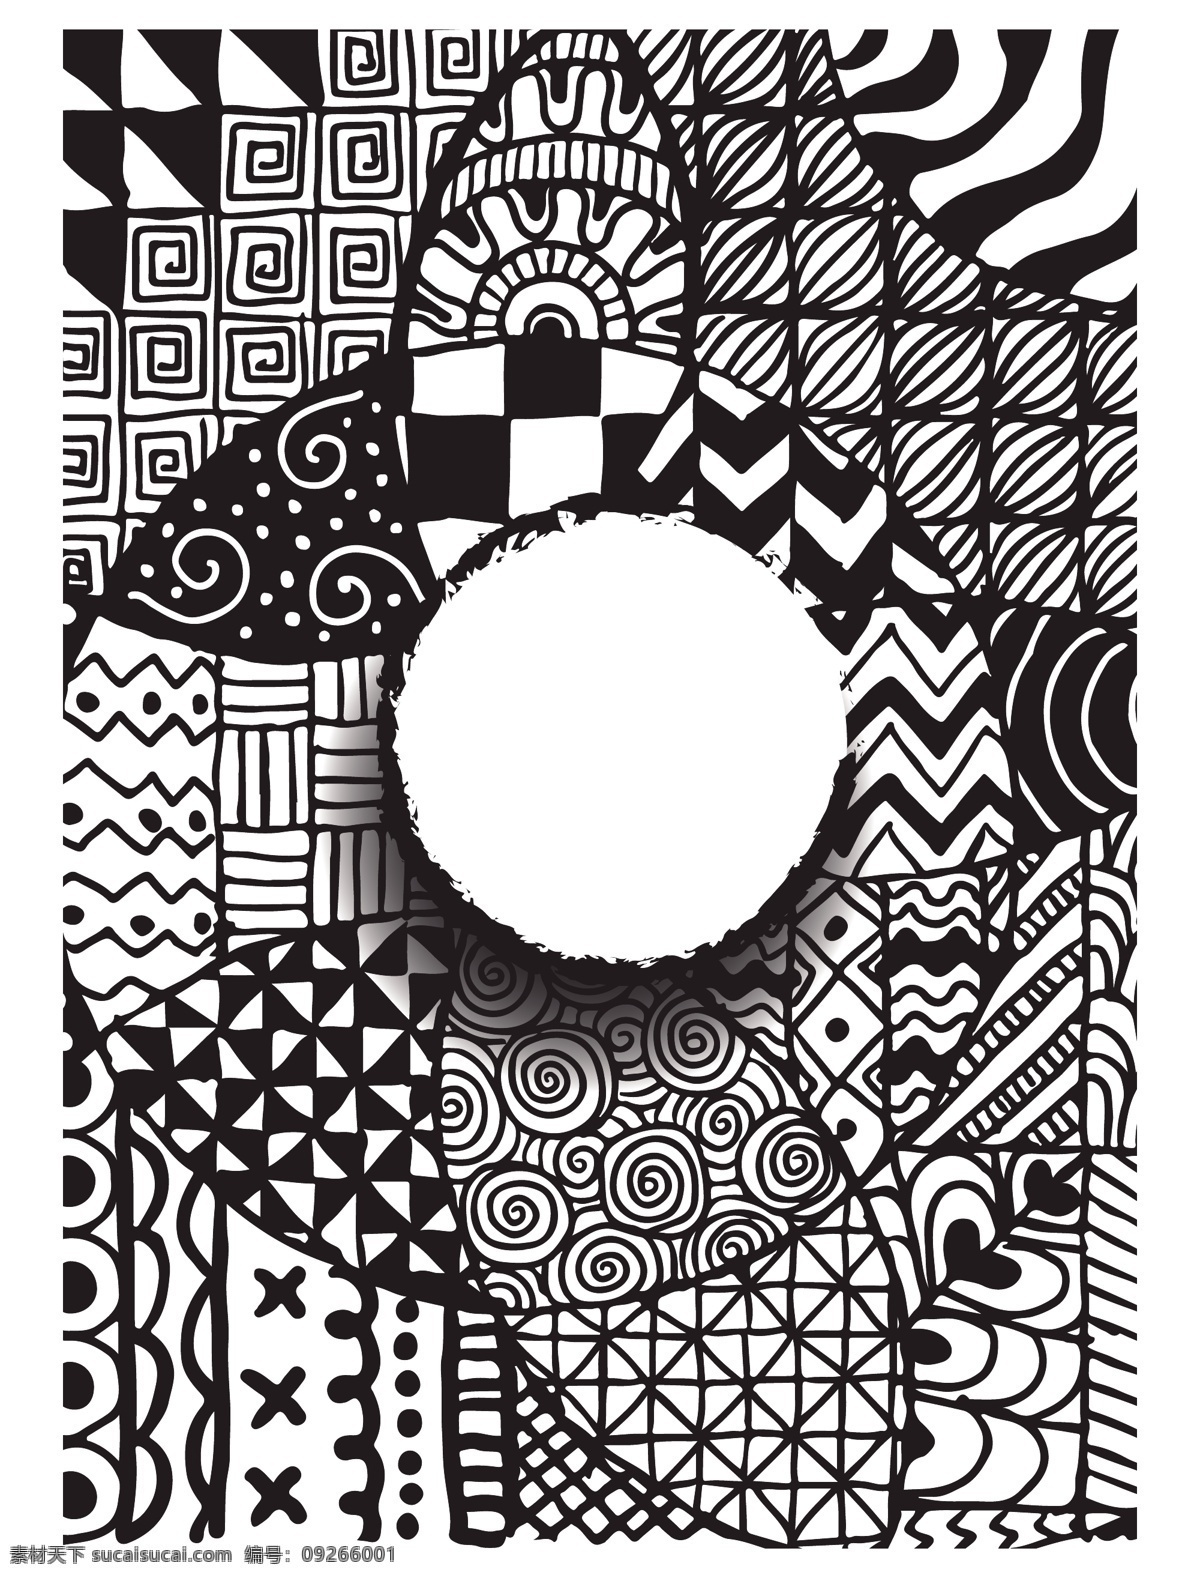 几何图形 黑白 创意 涂鸦 抽象 背景 几何 图形 矢量素材 背景素材 设计模板 设计素材